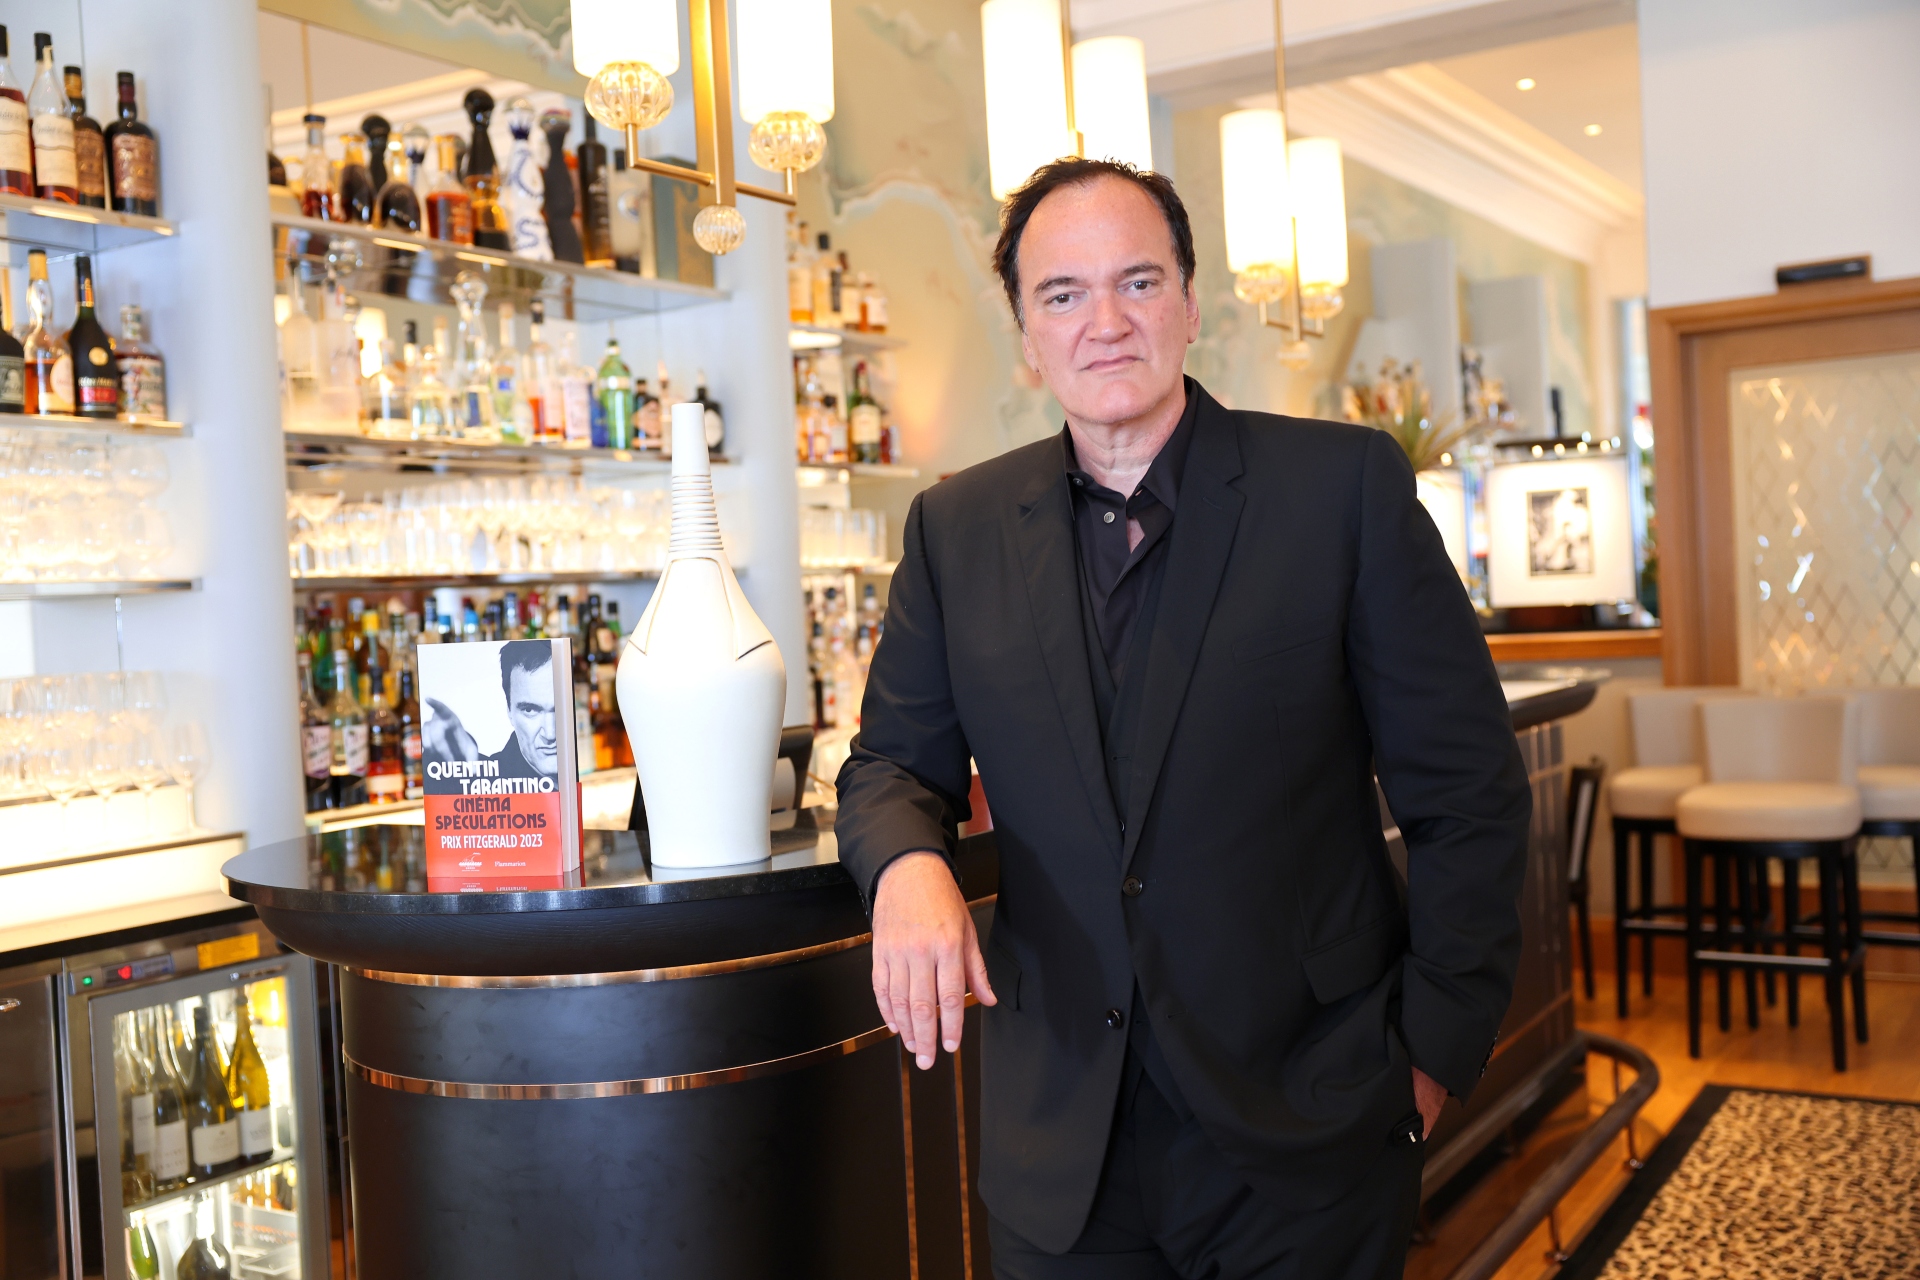 Intérpretes que reviveram suas carreiras graças a Quentin Tarantino